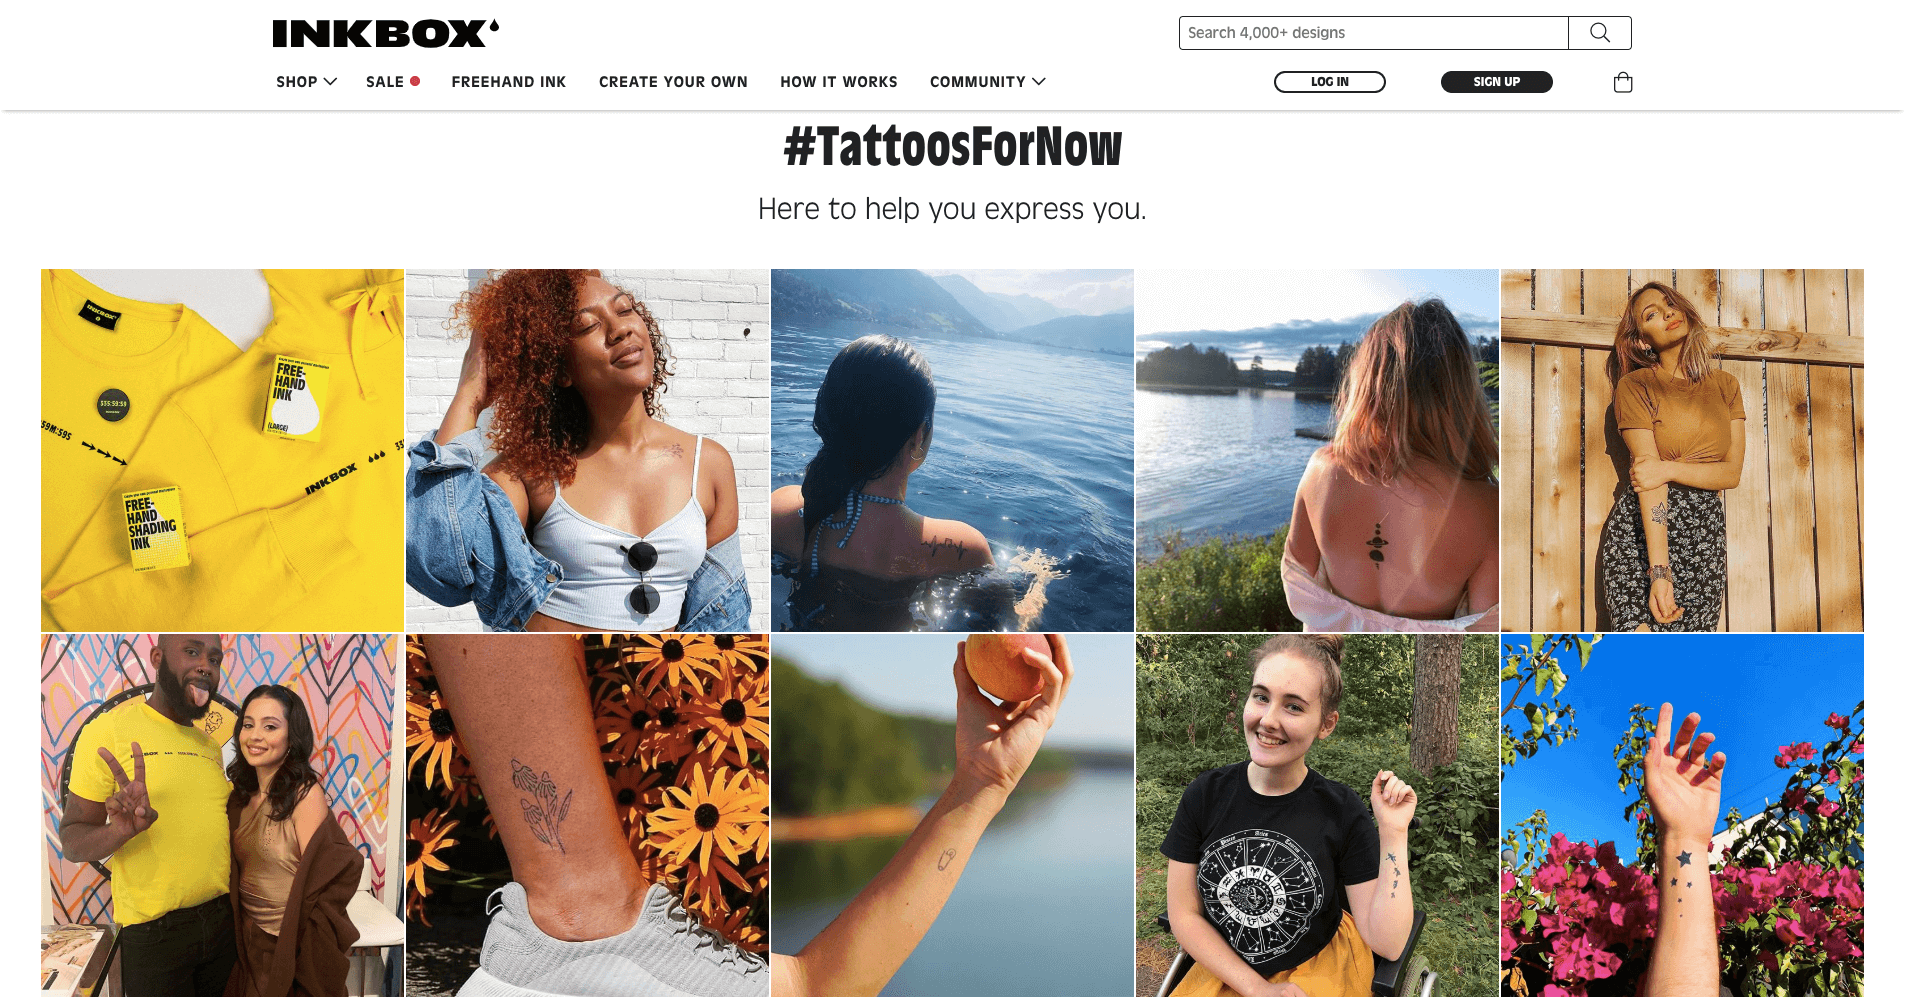 Brand storytelling - inkbox tattoos